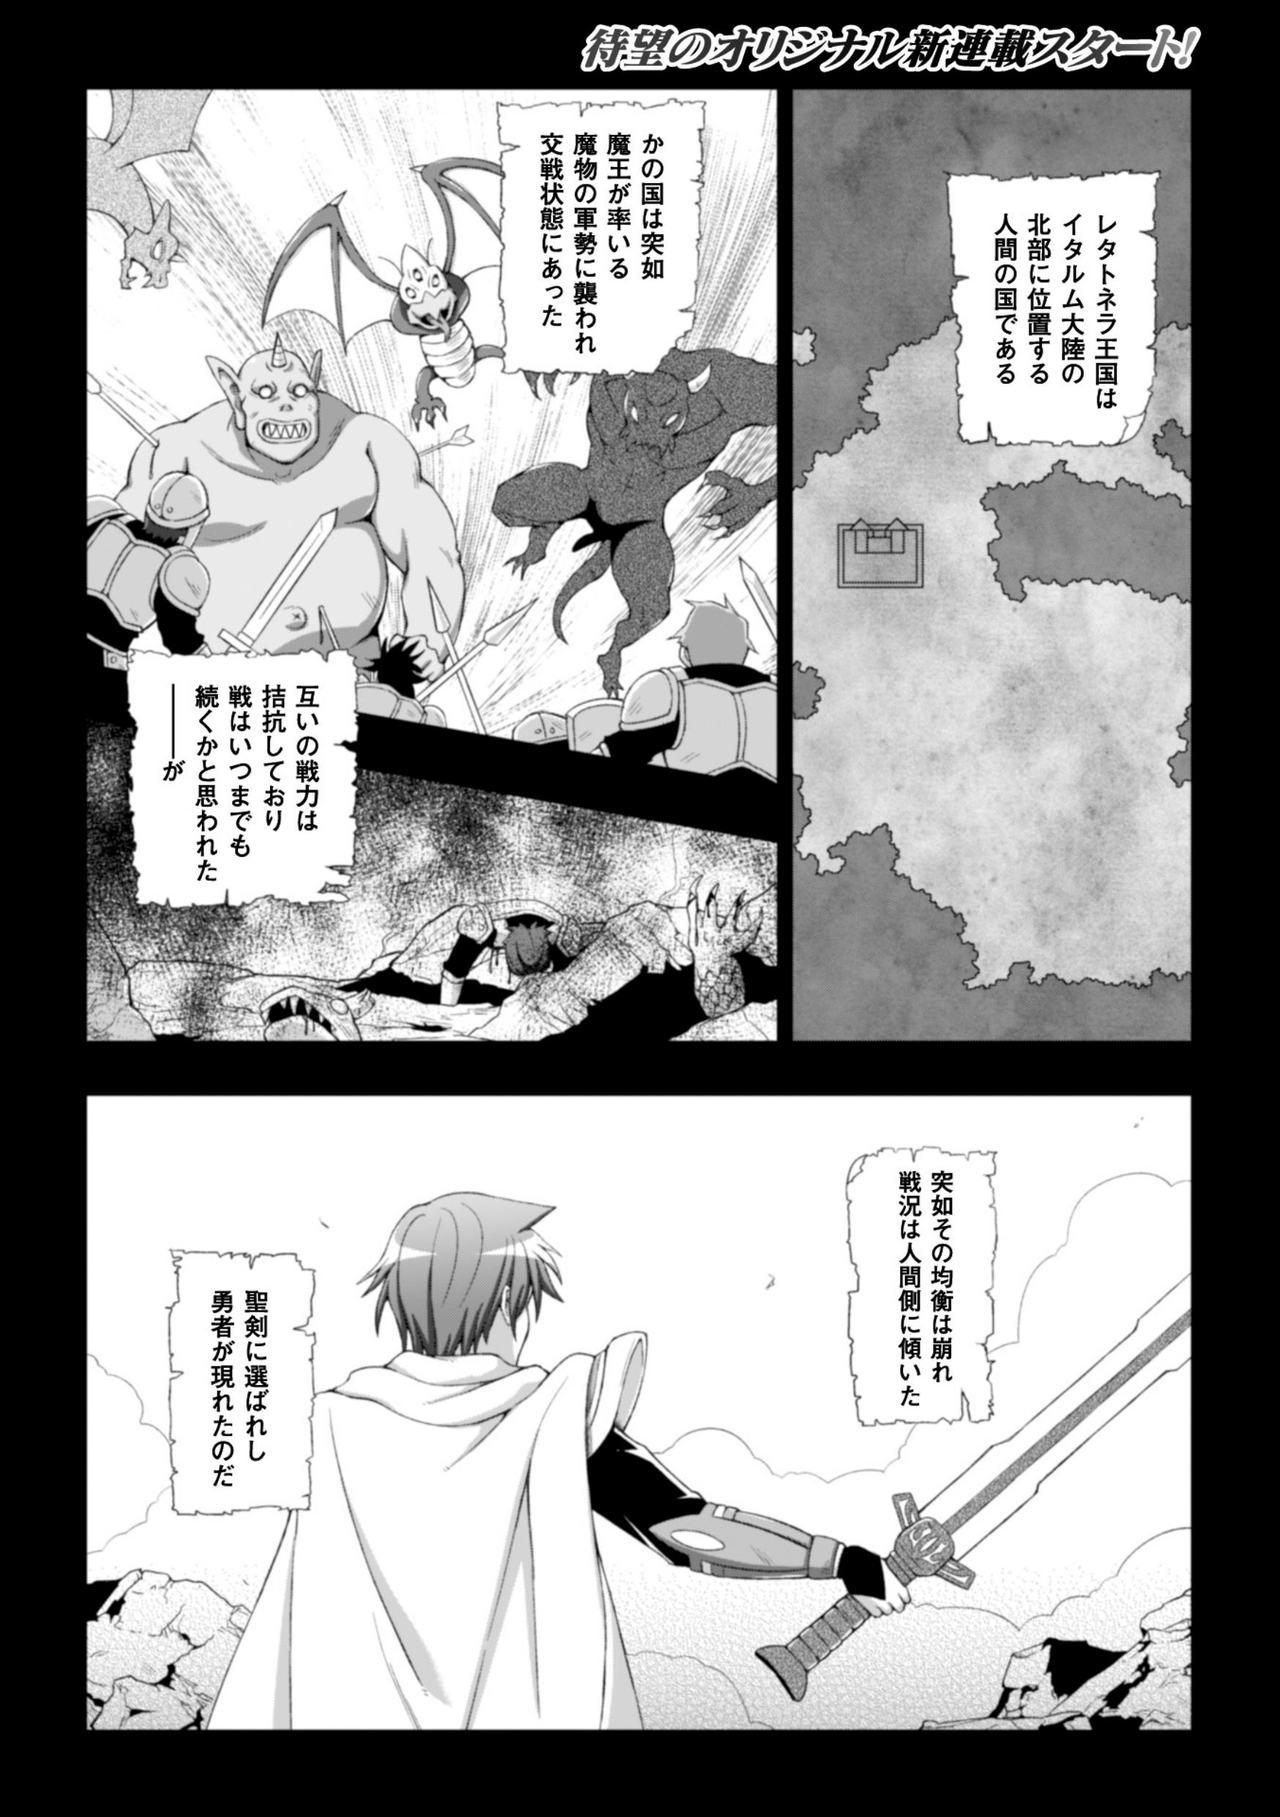 Seigi no Heroine Kangoku File Vol. 8 5